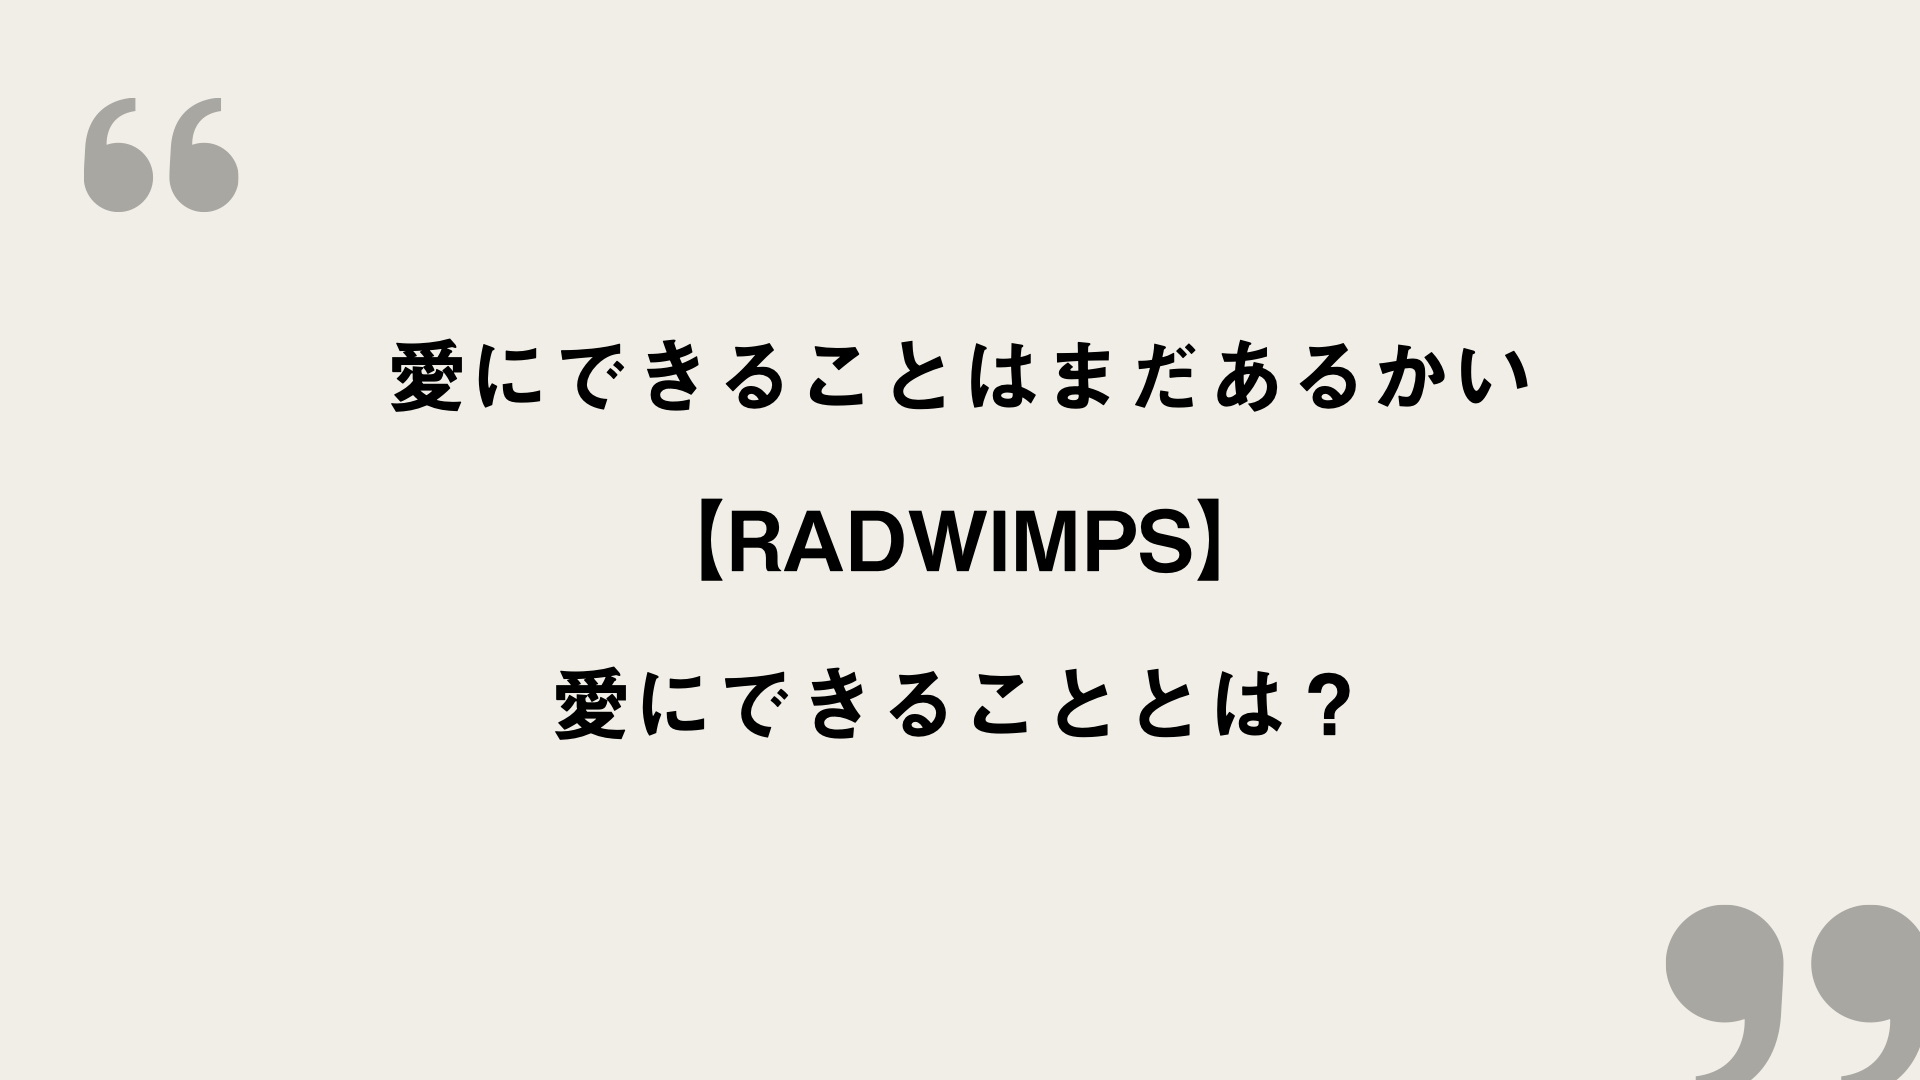 愛にできることはまだあるかい Radwimps 歌詞の意味を考察 愛にできることとは Framu Media